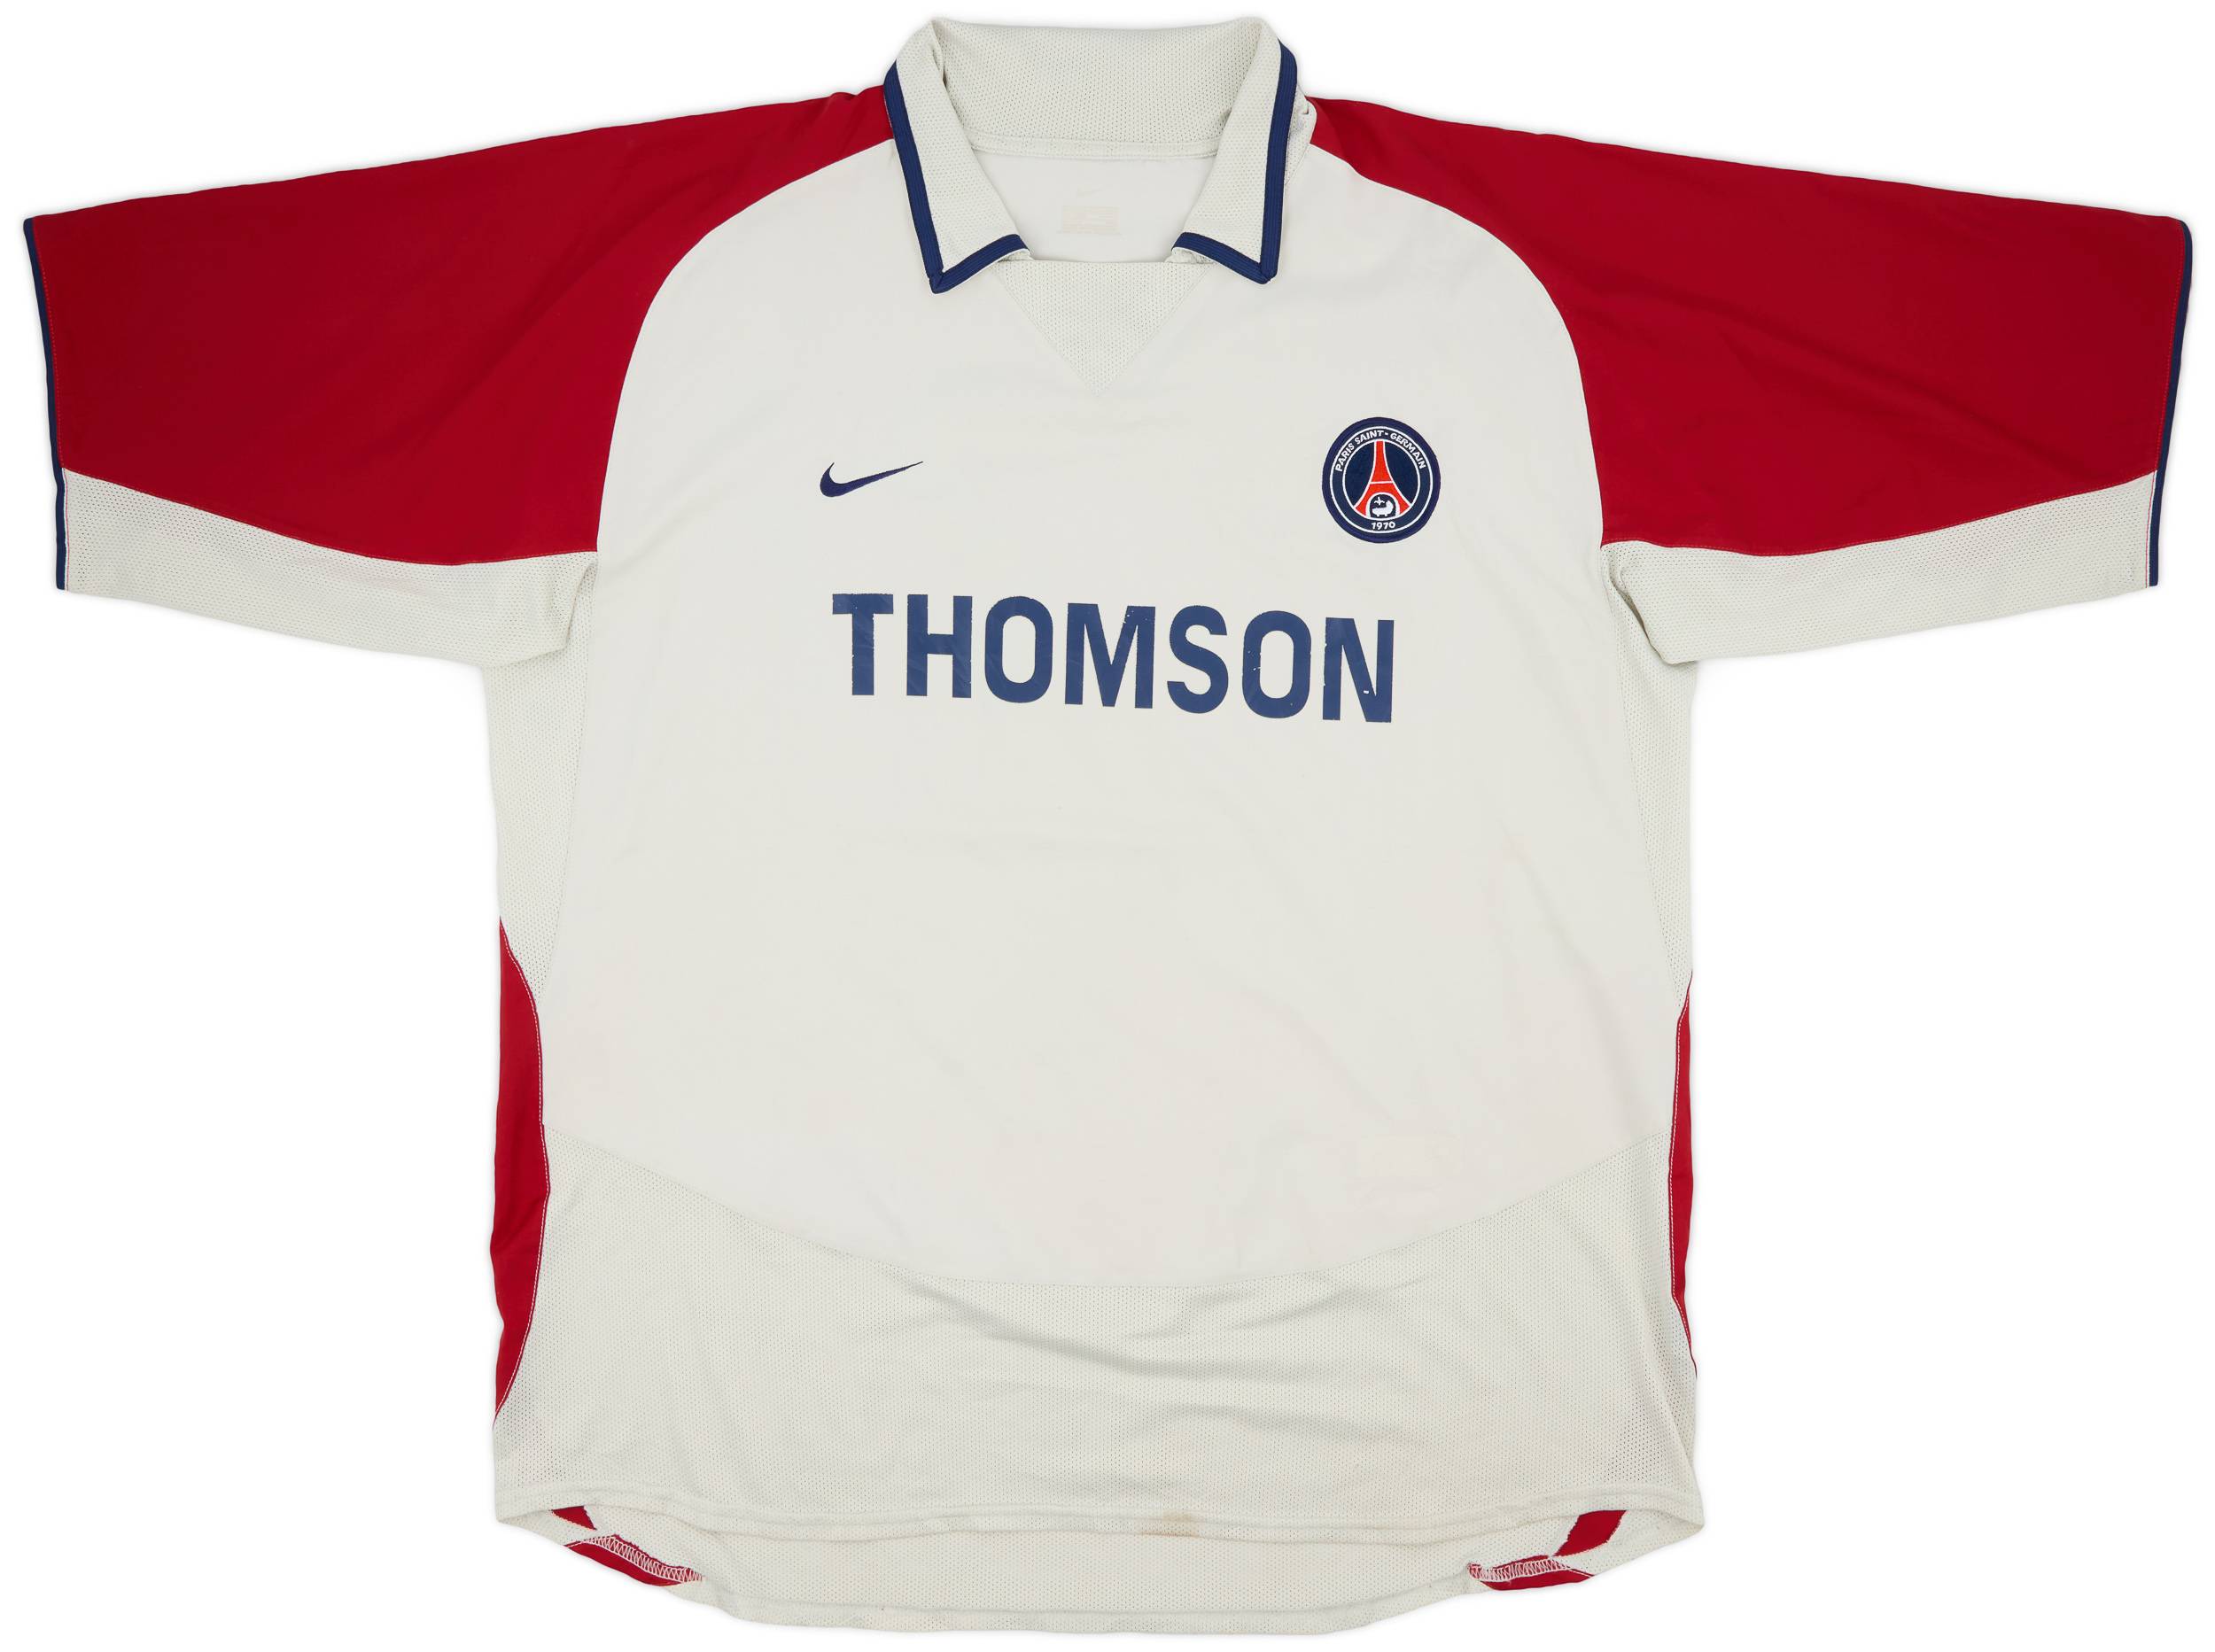 2003-04 Paris Saint-Germain Away Shirt - 7/10 - (XL)